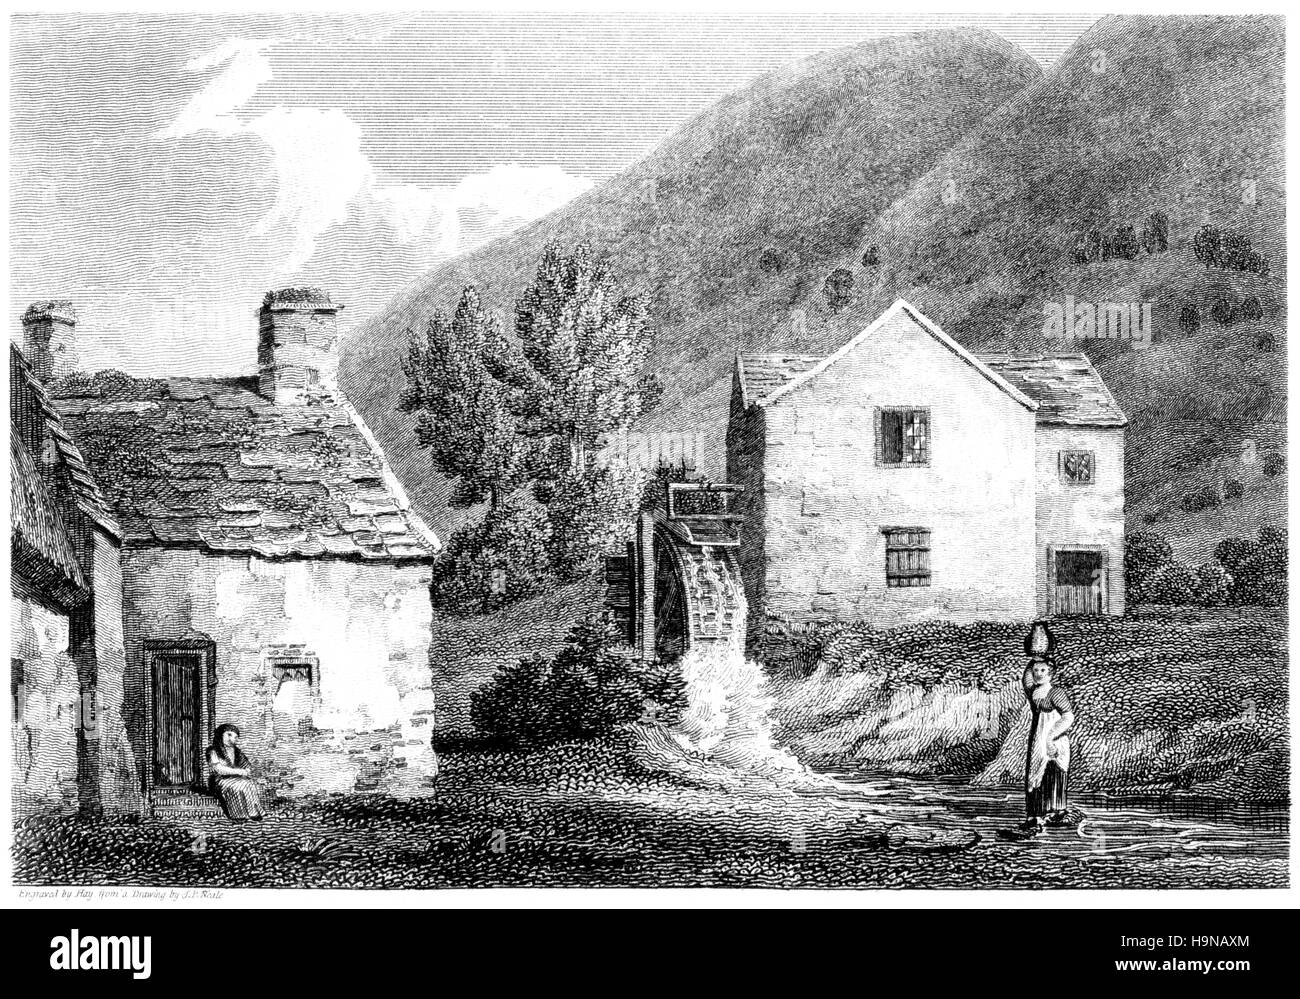 Eine Gravur der Abdr (Aber), Nordwales mit hoher Auflösung aus einem Buch gescannt gedruckt im Jahre 1812. Kostenlos copyright geglaubt. Stockfoto